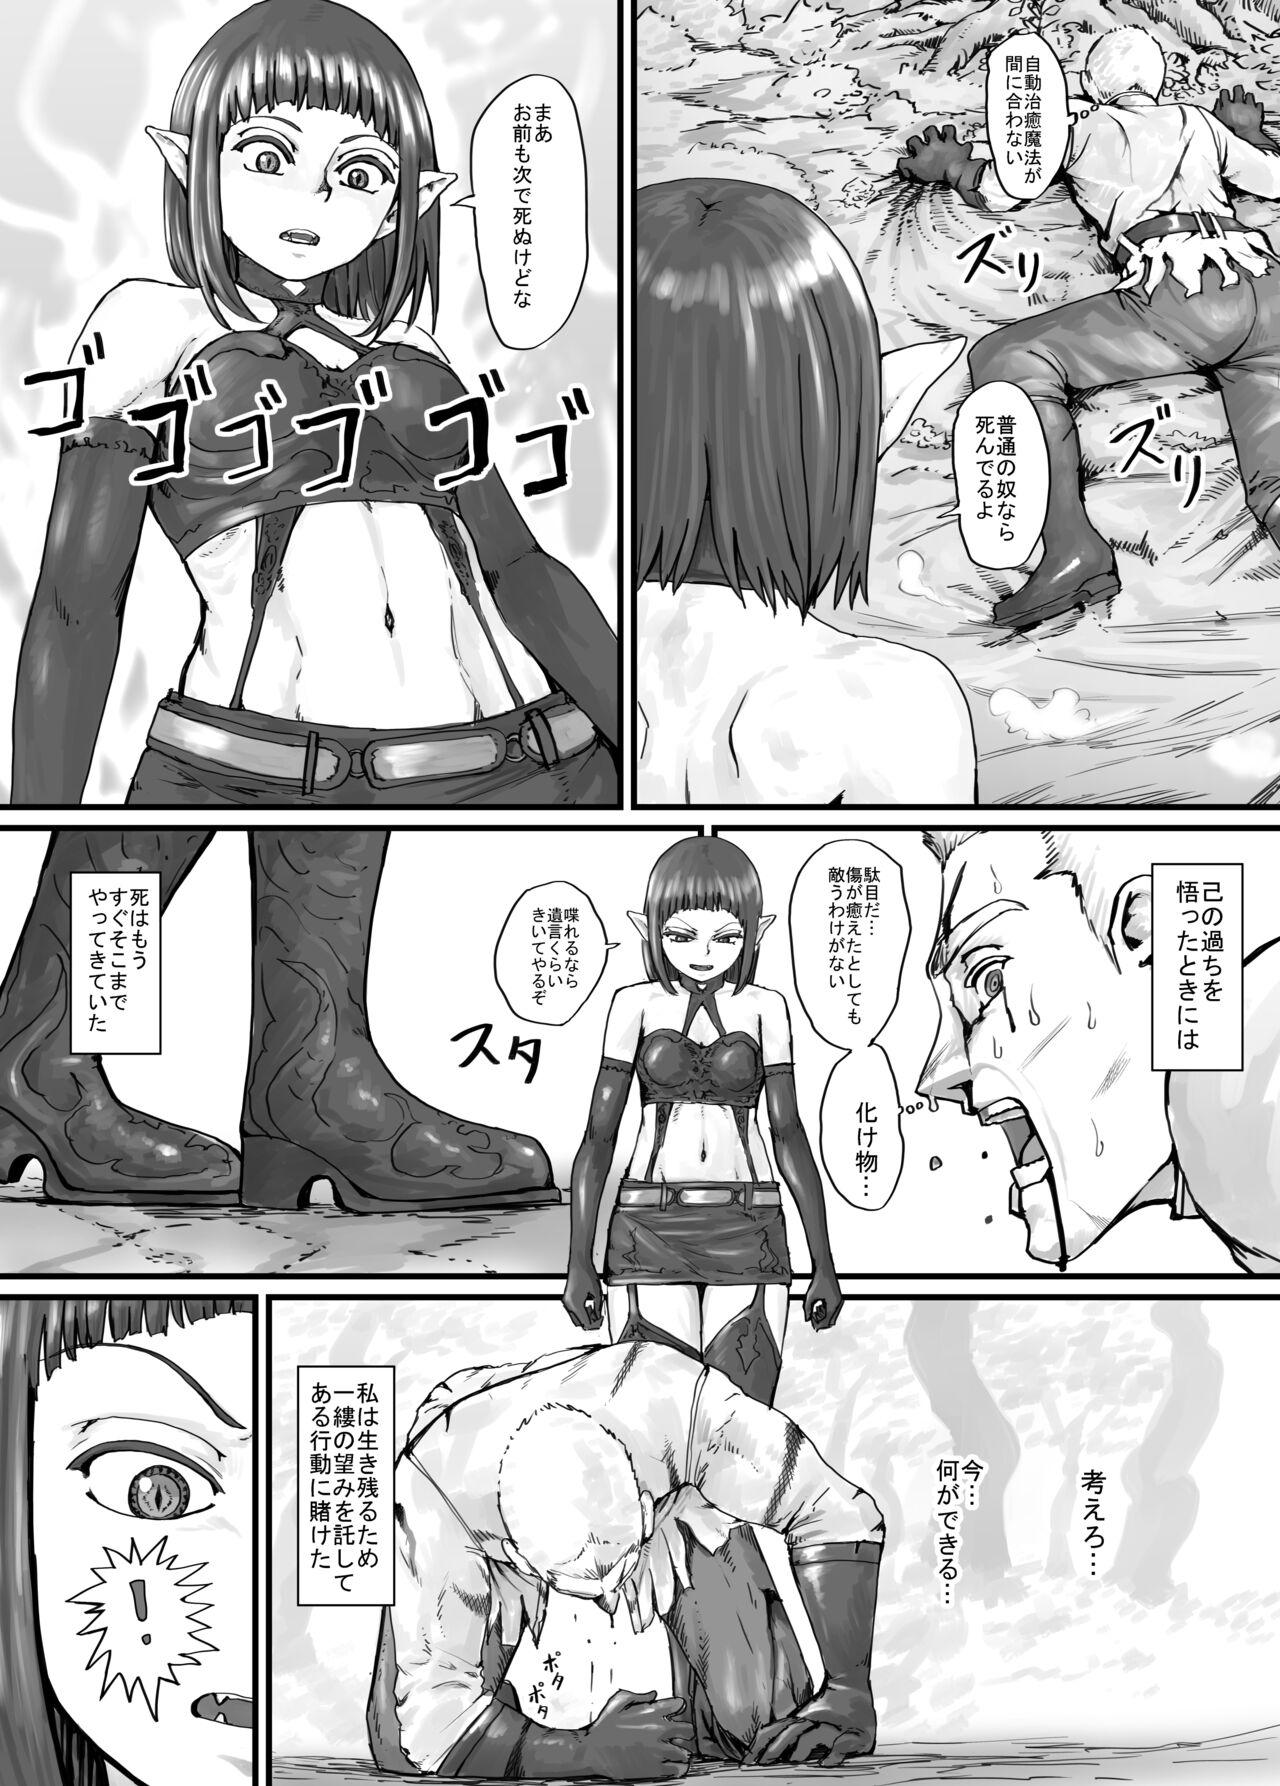 Women Sucking Dicks 魔族ちゃん漫画1 - Original Gay Uncut - Page 10